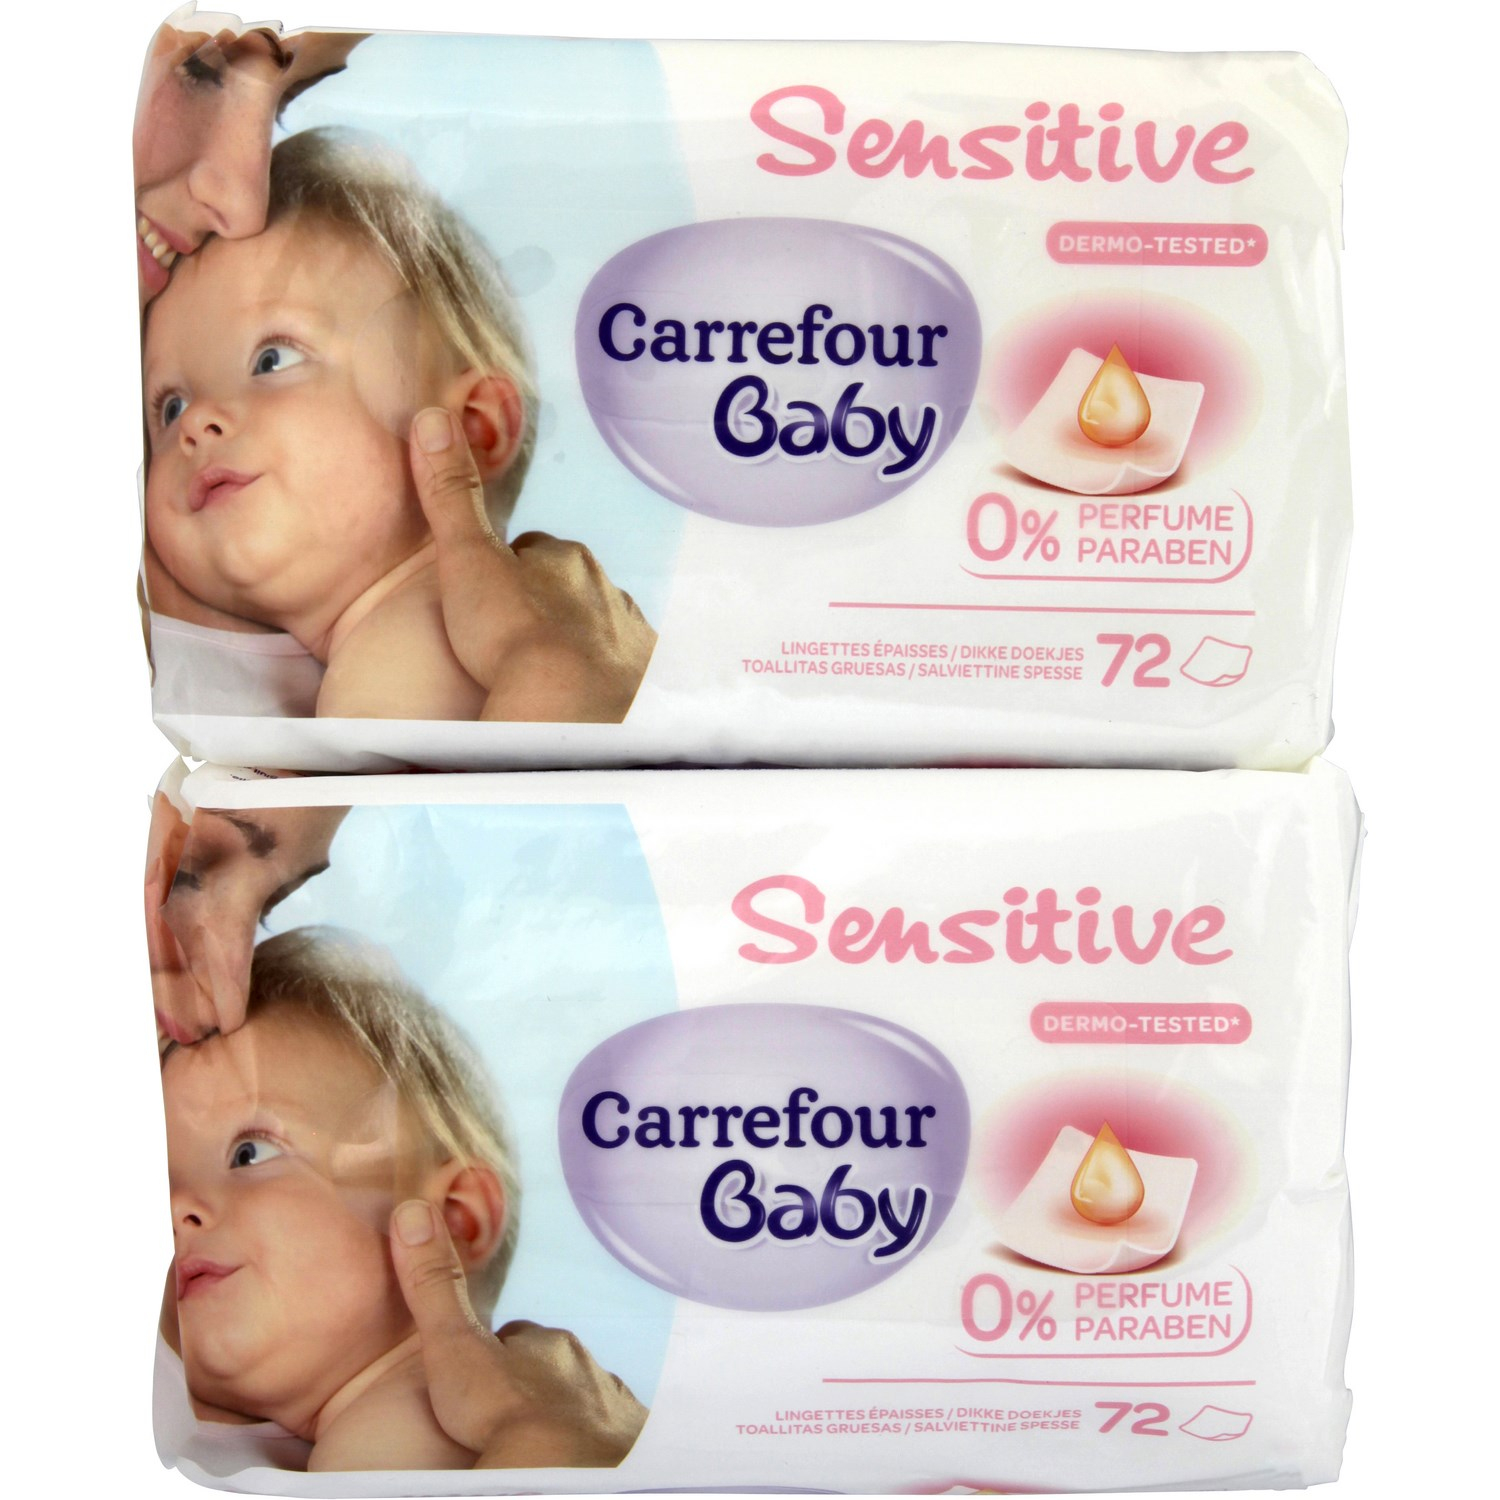 Lingettes Carrefour Baby Baby Comparez Vos Produits Avec Meilleur Produit Toilette Bebe Agencecormierdelauniere Com